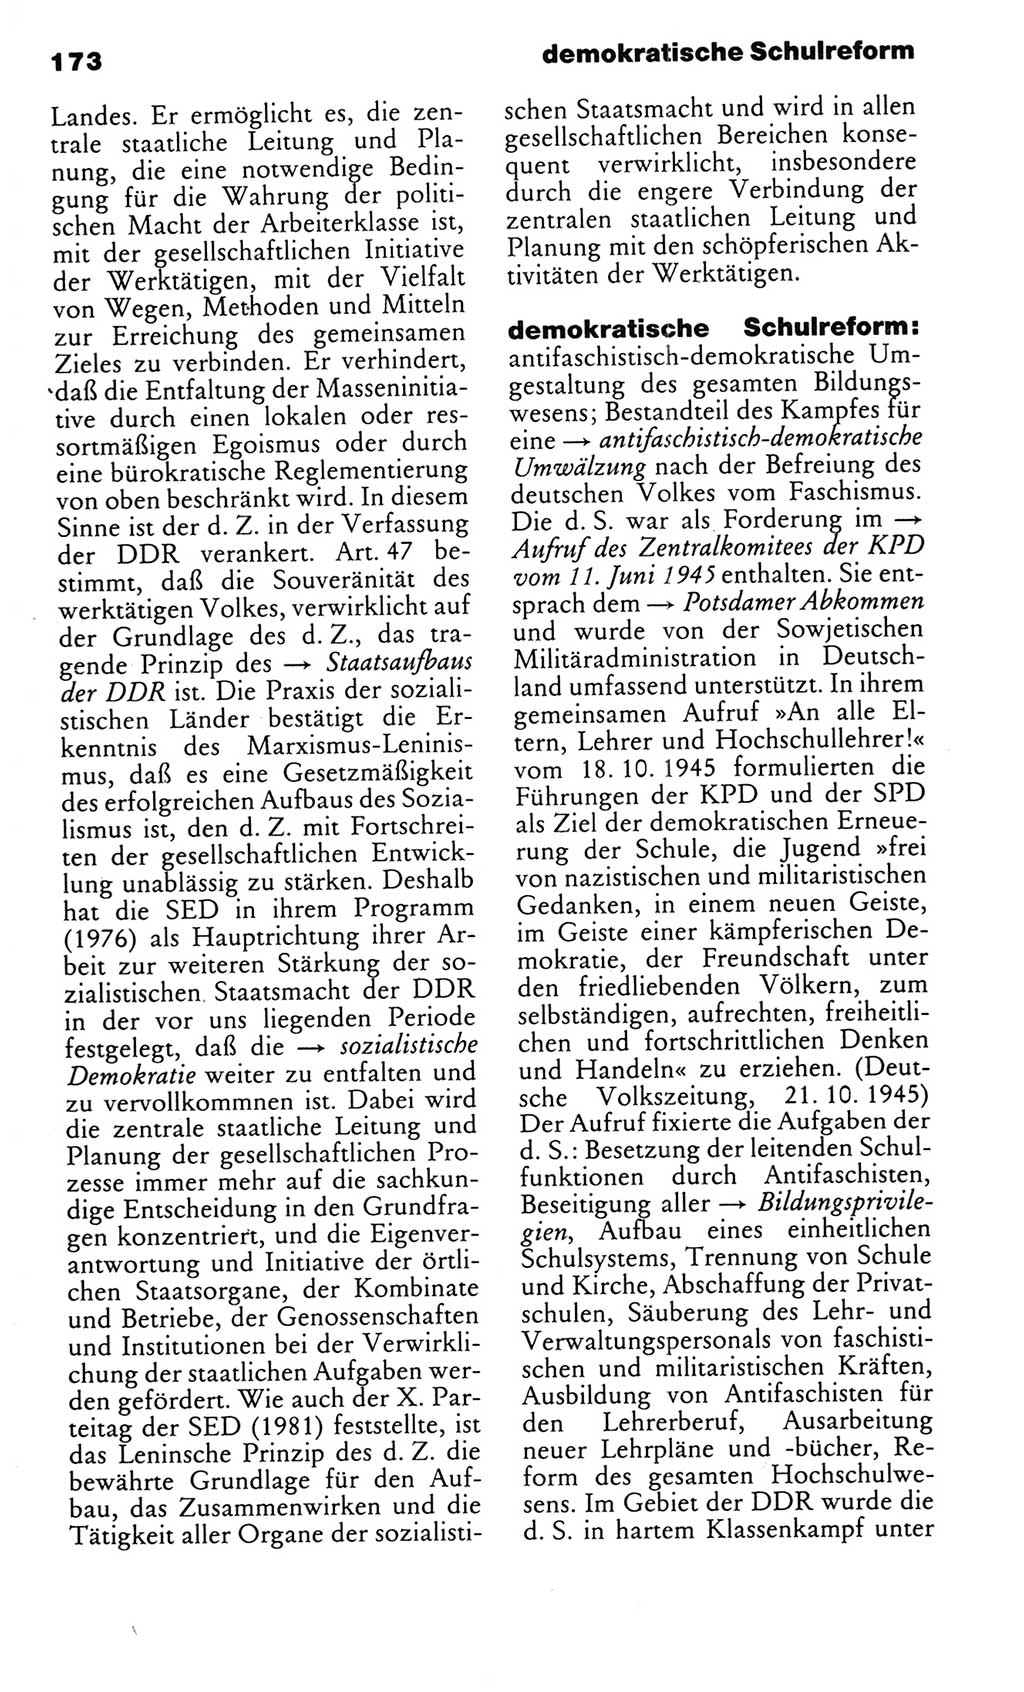 Kleines politisches Wörterbuch [Deutsche Demokratische Republik (DDR)] 1985, Seite 173 (Kl. pol. Wb. DDR 1985, S. 173)